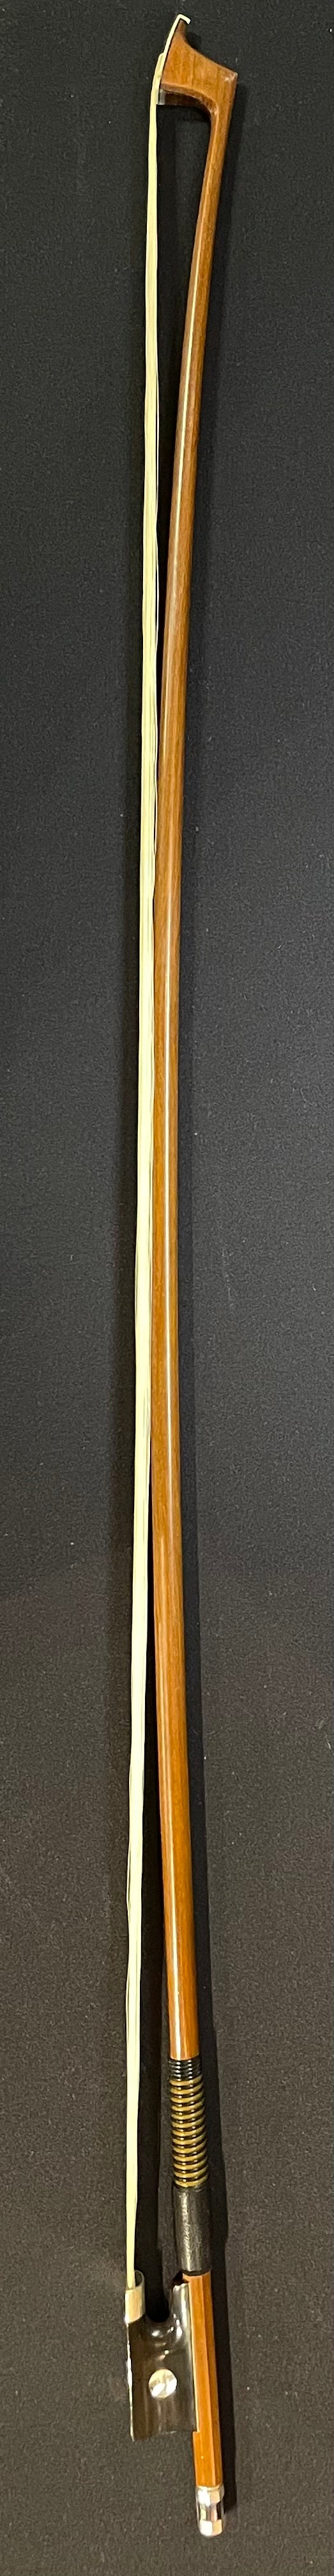 4/4 Violin Bow - DT45H Wood Model